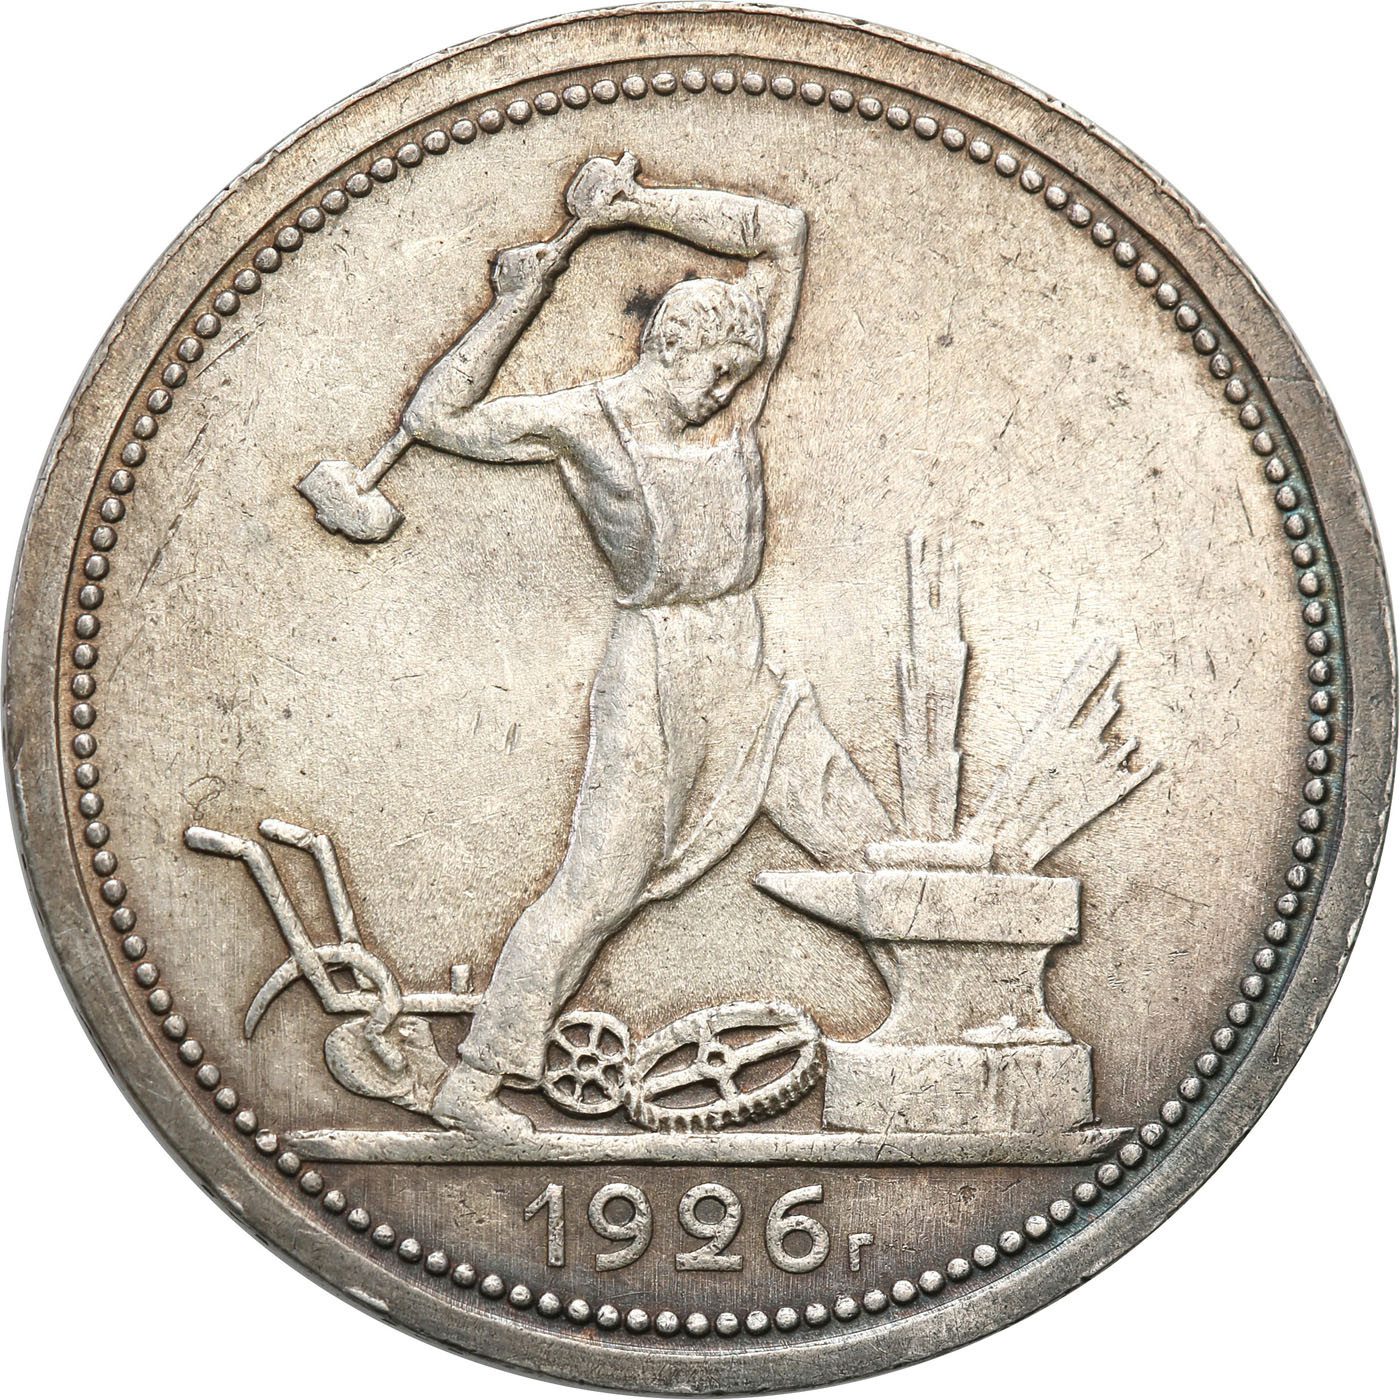 Rosja. 50 kopiejek (połtinnik) 1926